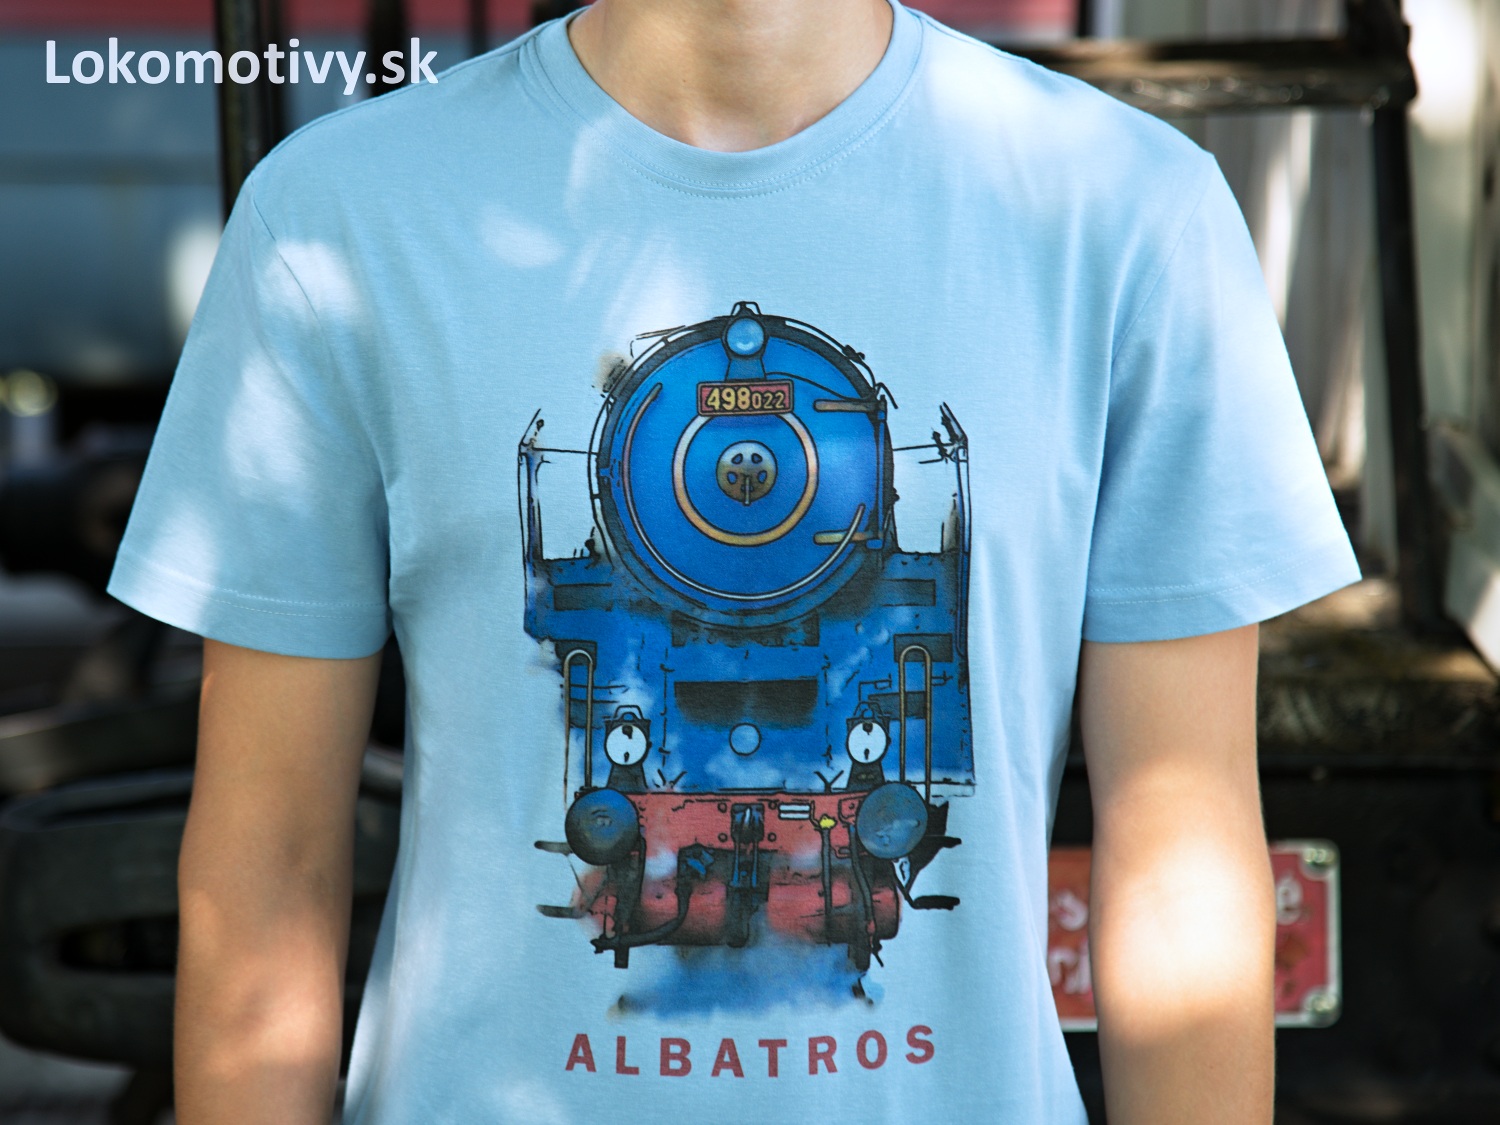 Tričko s lokomotívou Albatros 498.0